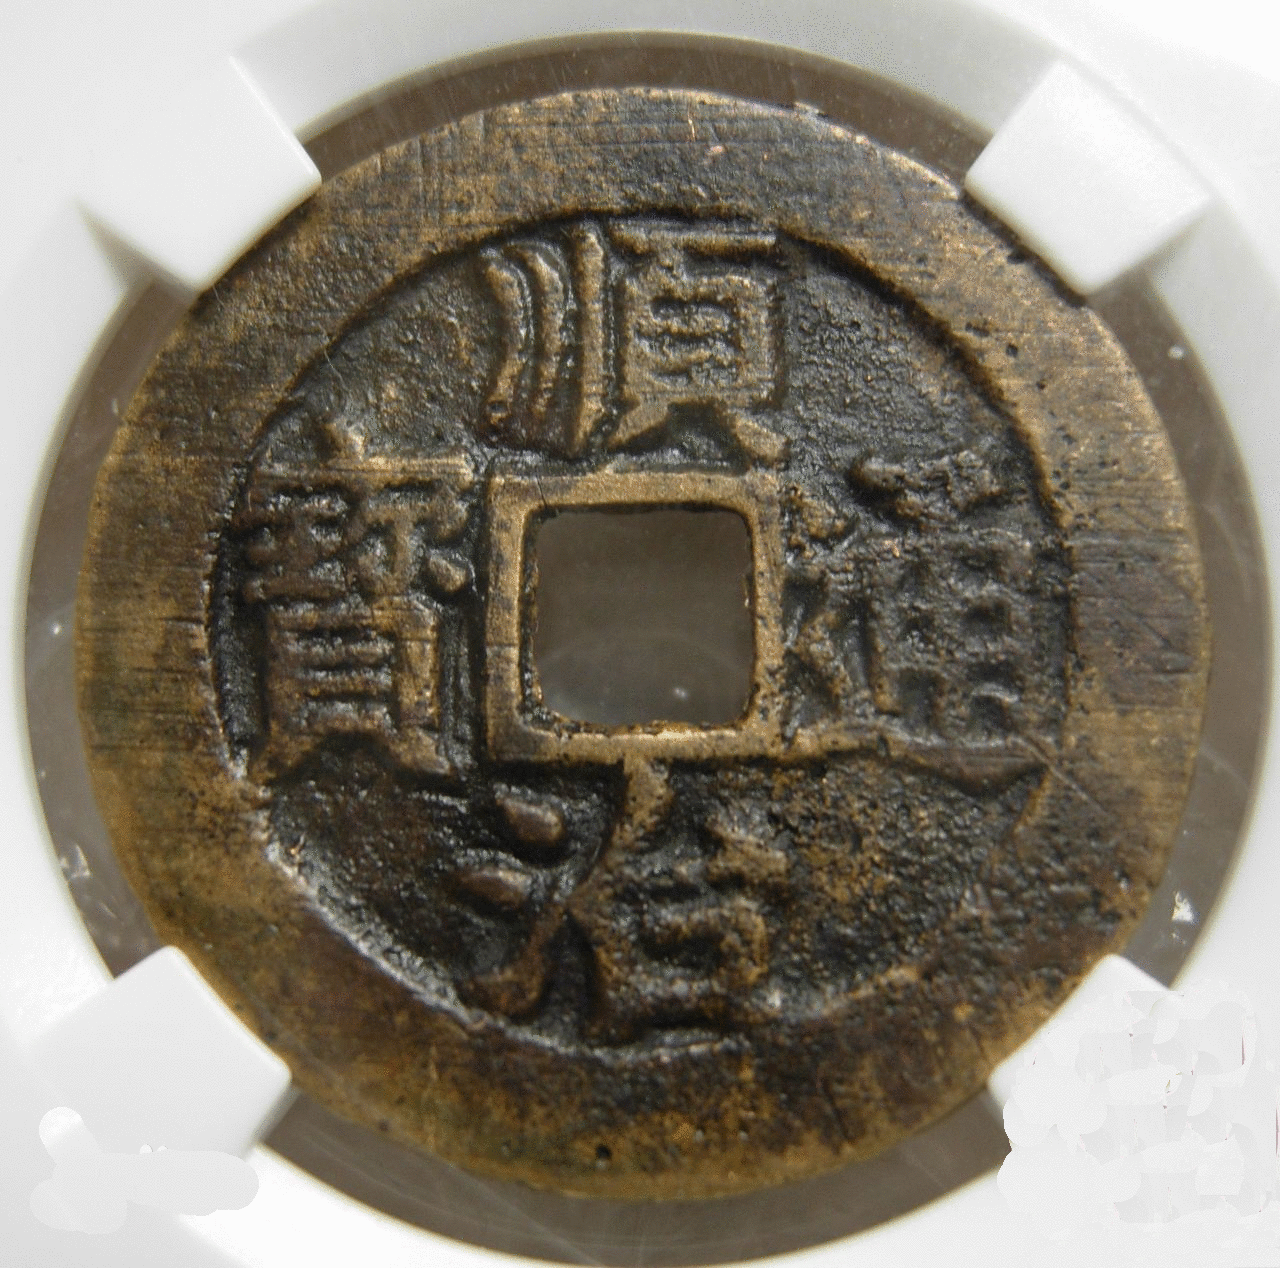 《125枚新中国纪念币大全 》送122枚历代文物古币 - 哔哩哔哩